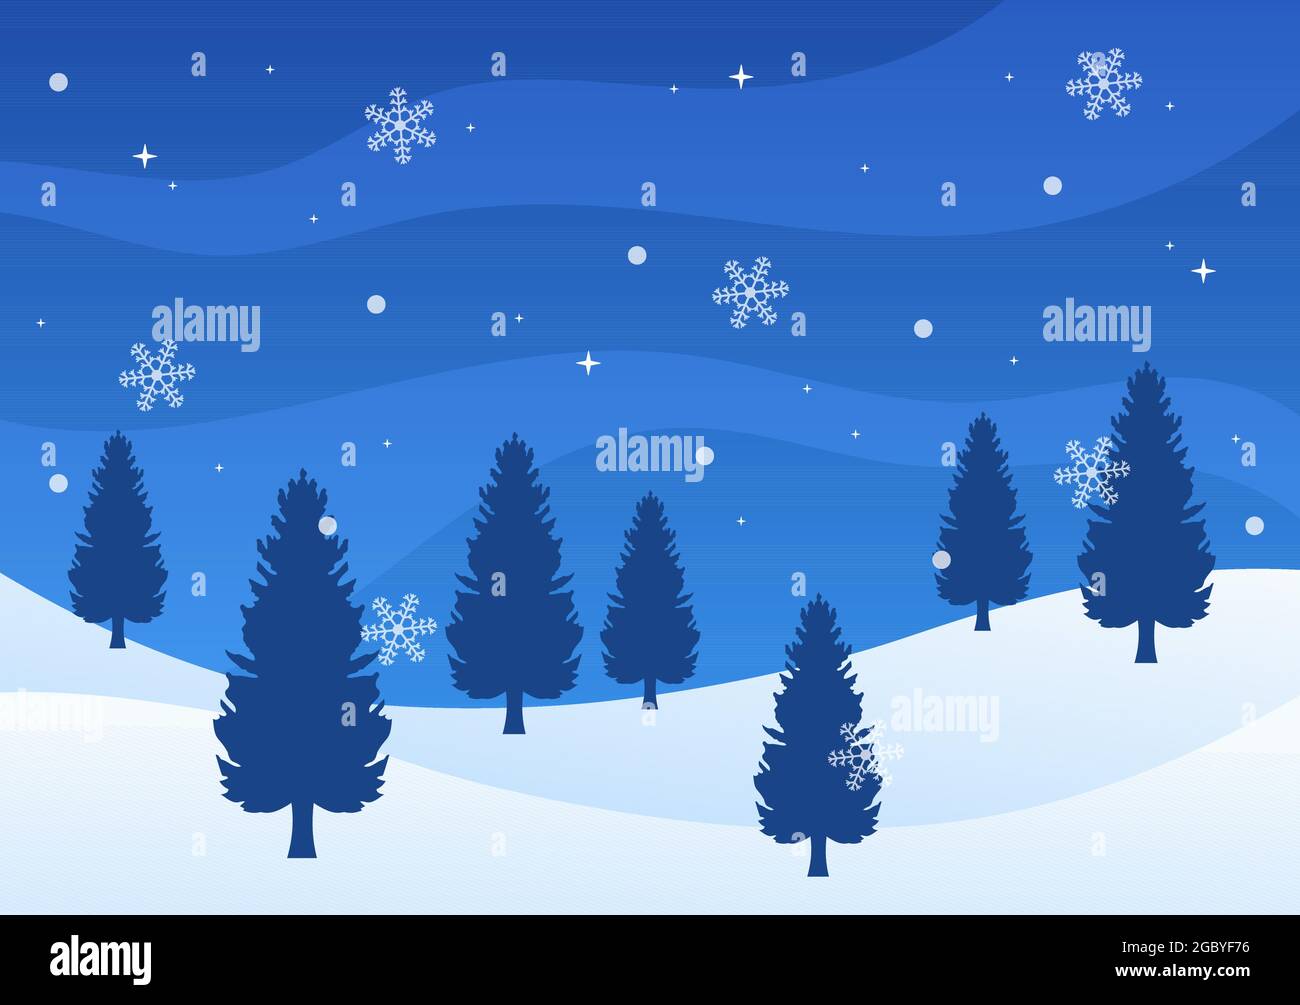 Natale Inverno Paesaggio e Capodanno sfondo illustrazione vettoriale con una vista di caduta neve bianca, alberi, montagne in stile piatto Design Illustrazione Vettoriale